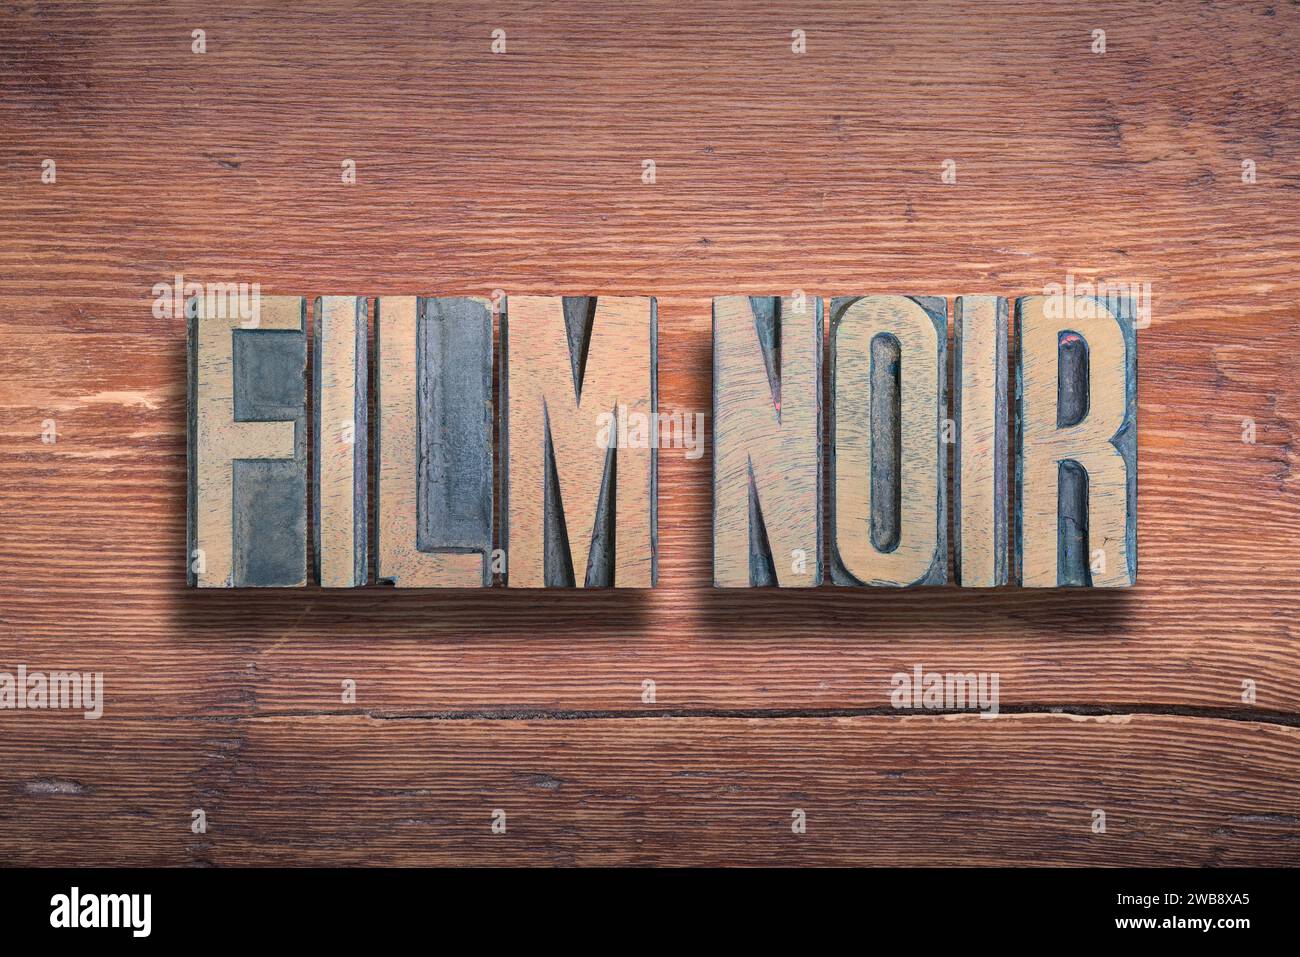 Film noir, häufig verwendete französische Phrase für Schwarzen Film, ein Genre dunkler Filme, kombiniert auf Vintage lackierter Holzoberfläche Stockfoto